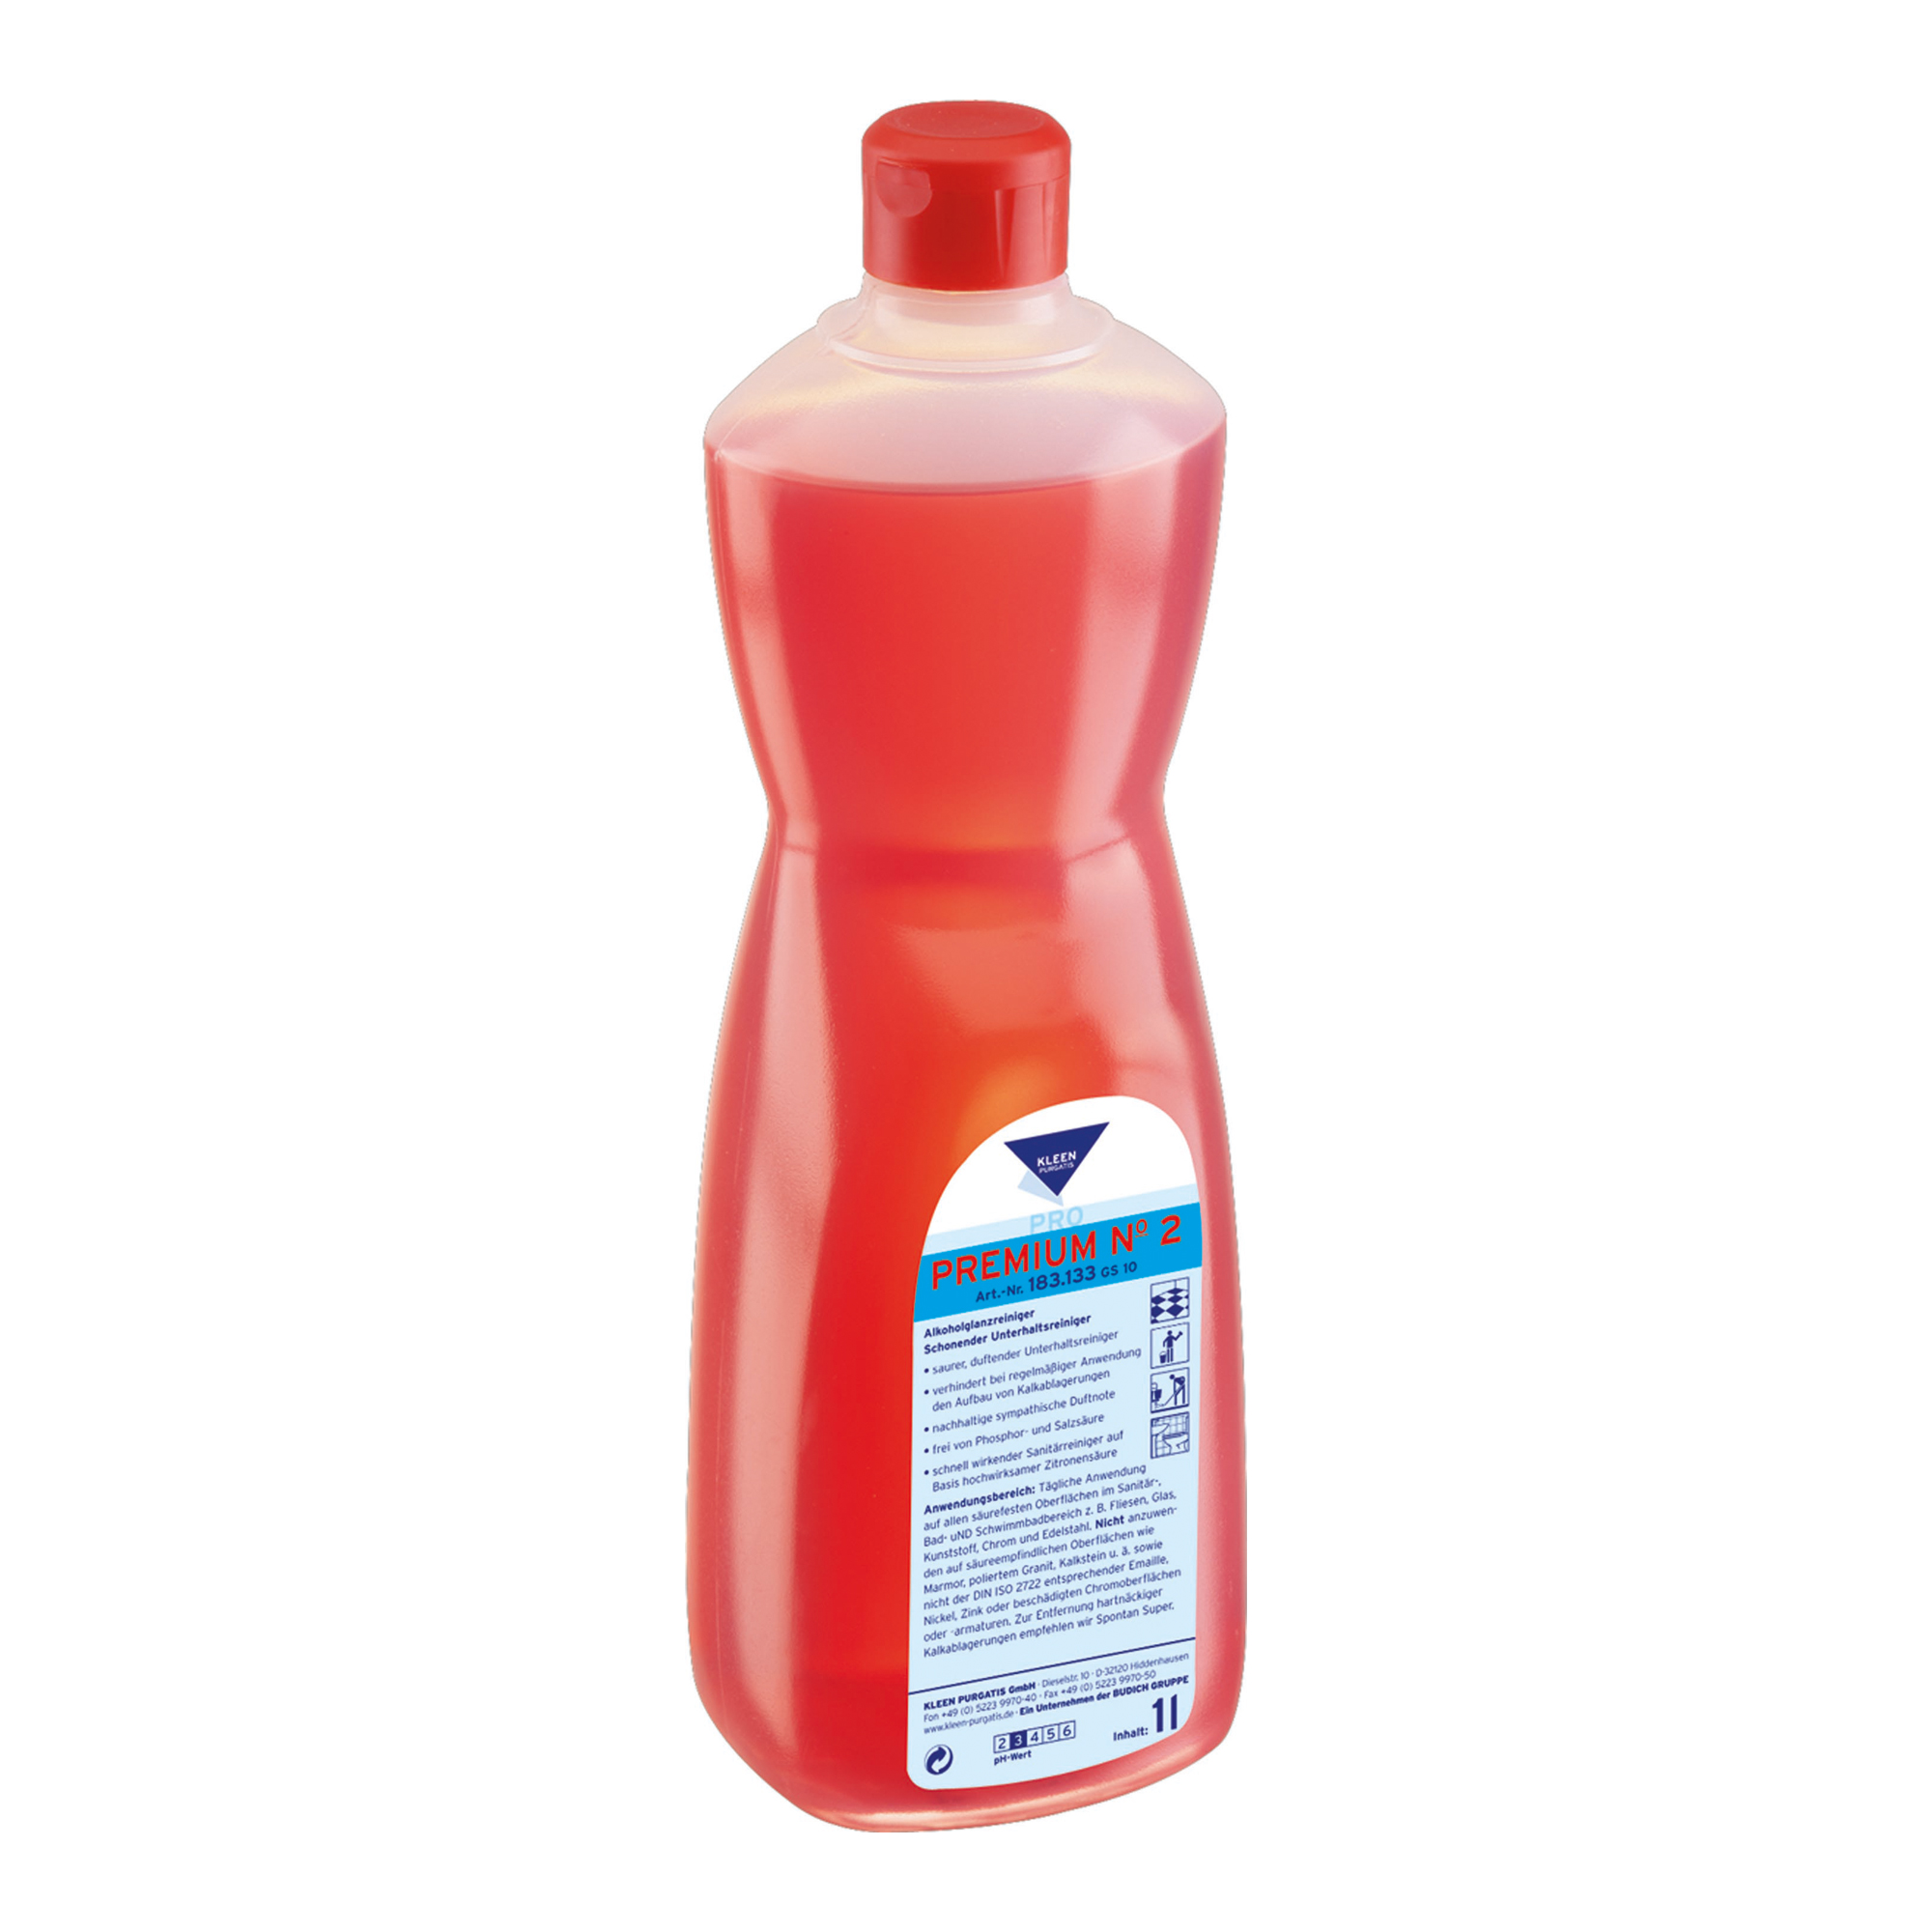 Kleen Purgatis Premium No 2 Sanitärunterhaltsreiniger 1 Liter Flasche 90183133_1